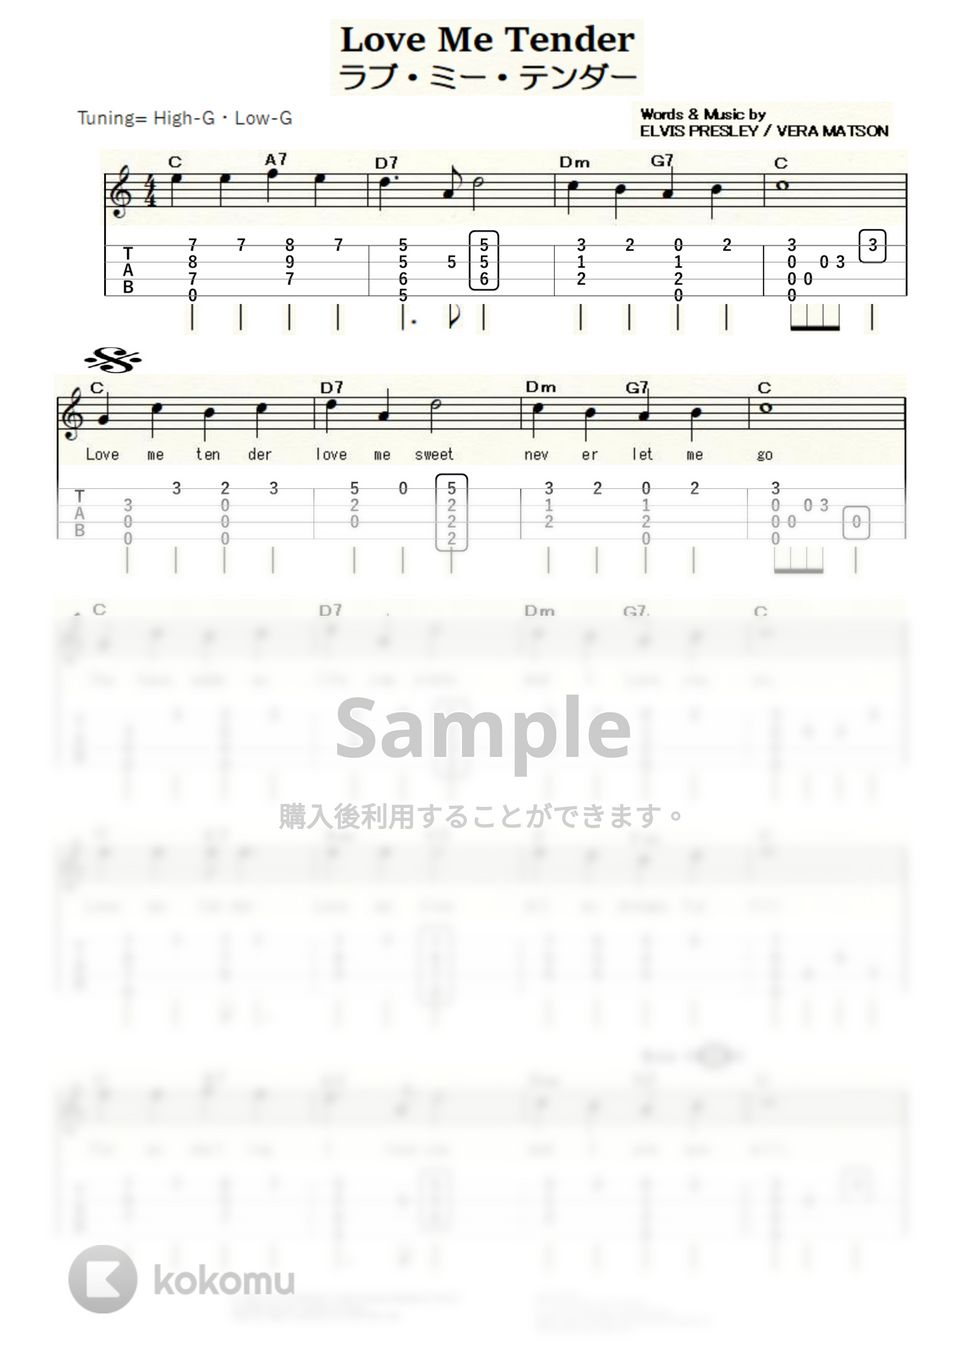 エルヴィス・プレスリー - Love Me Tender (ｳｸﾚﾚｿﾛ/High-G・Low-G/中級) by ukulelepapa